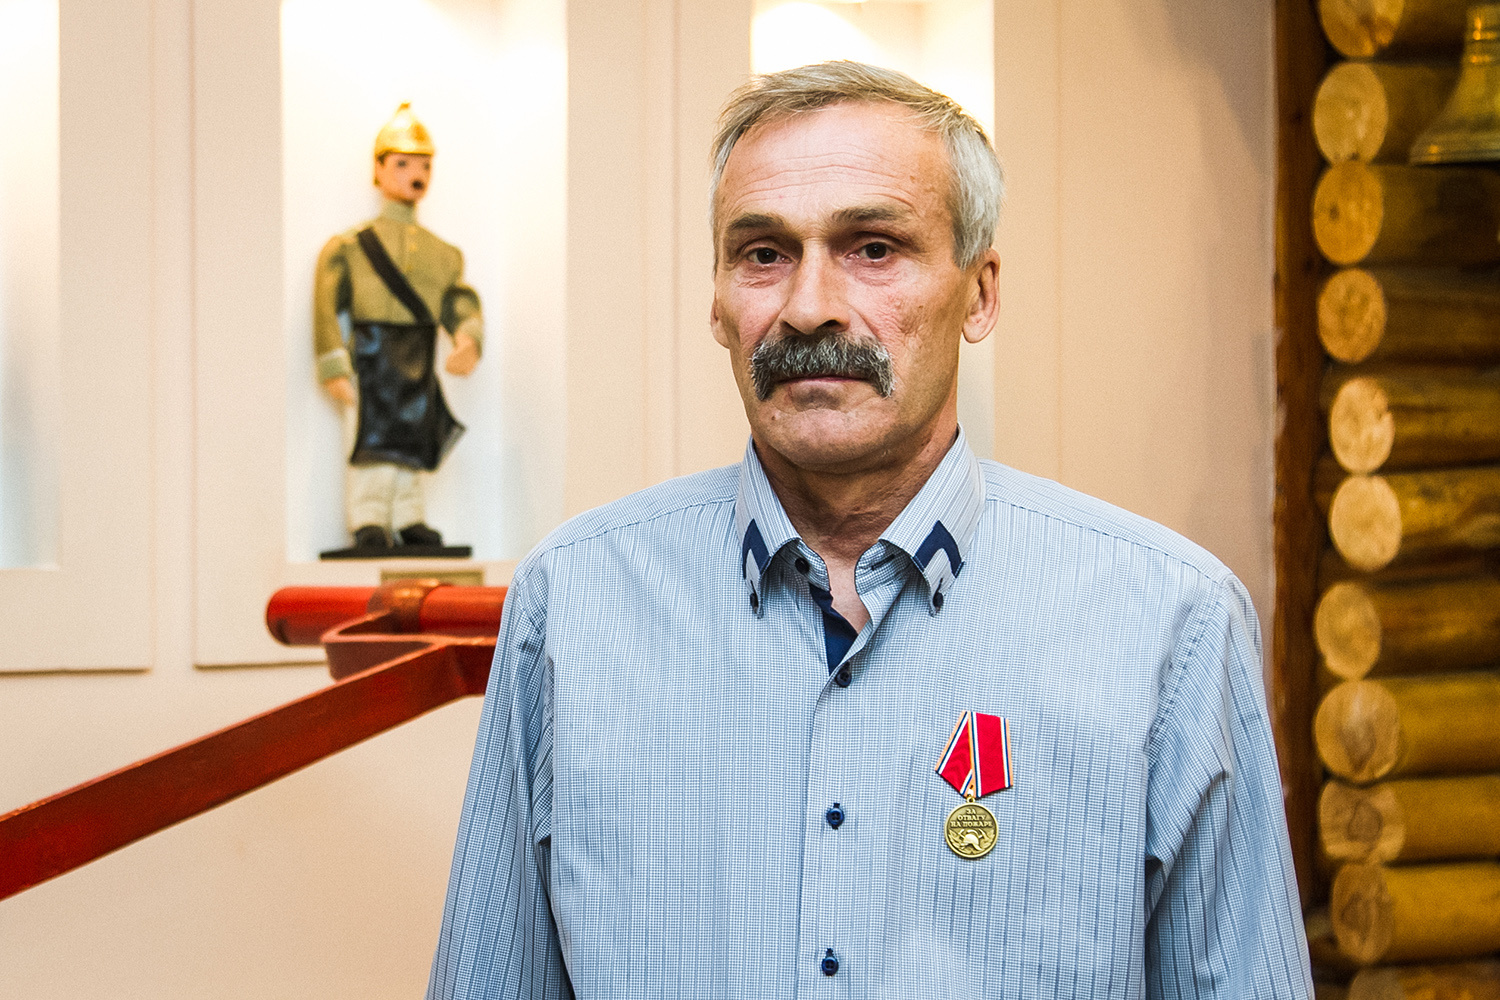 Мужчину наградили медалью «За отвагу на пожаре»